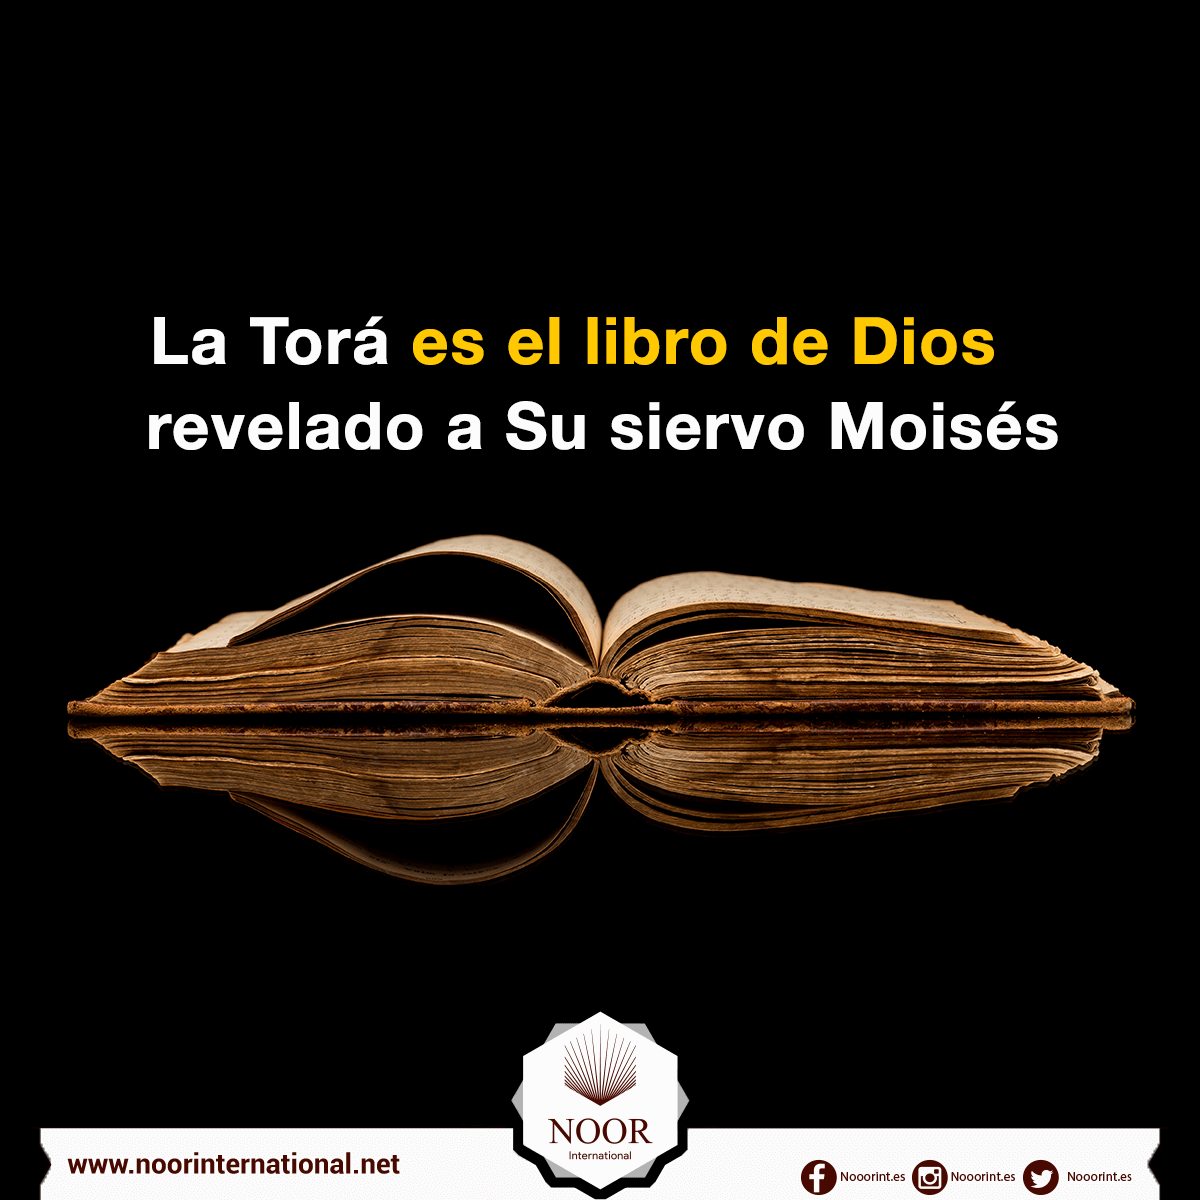 La Torá es el libro de Dios revelado a Su siervo Moisés